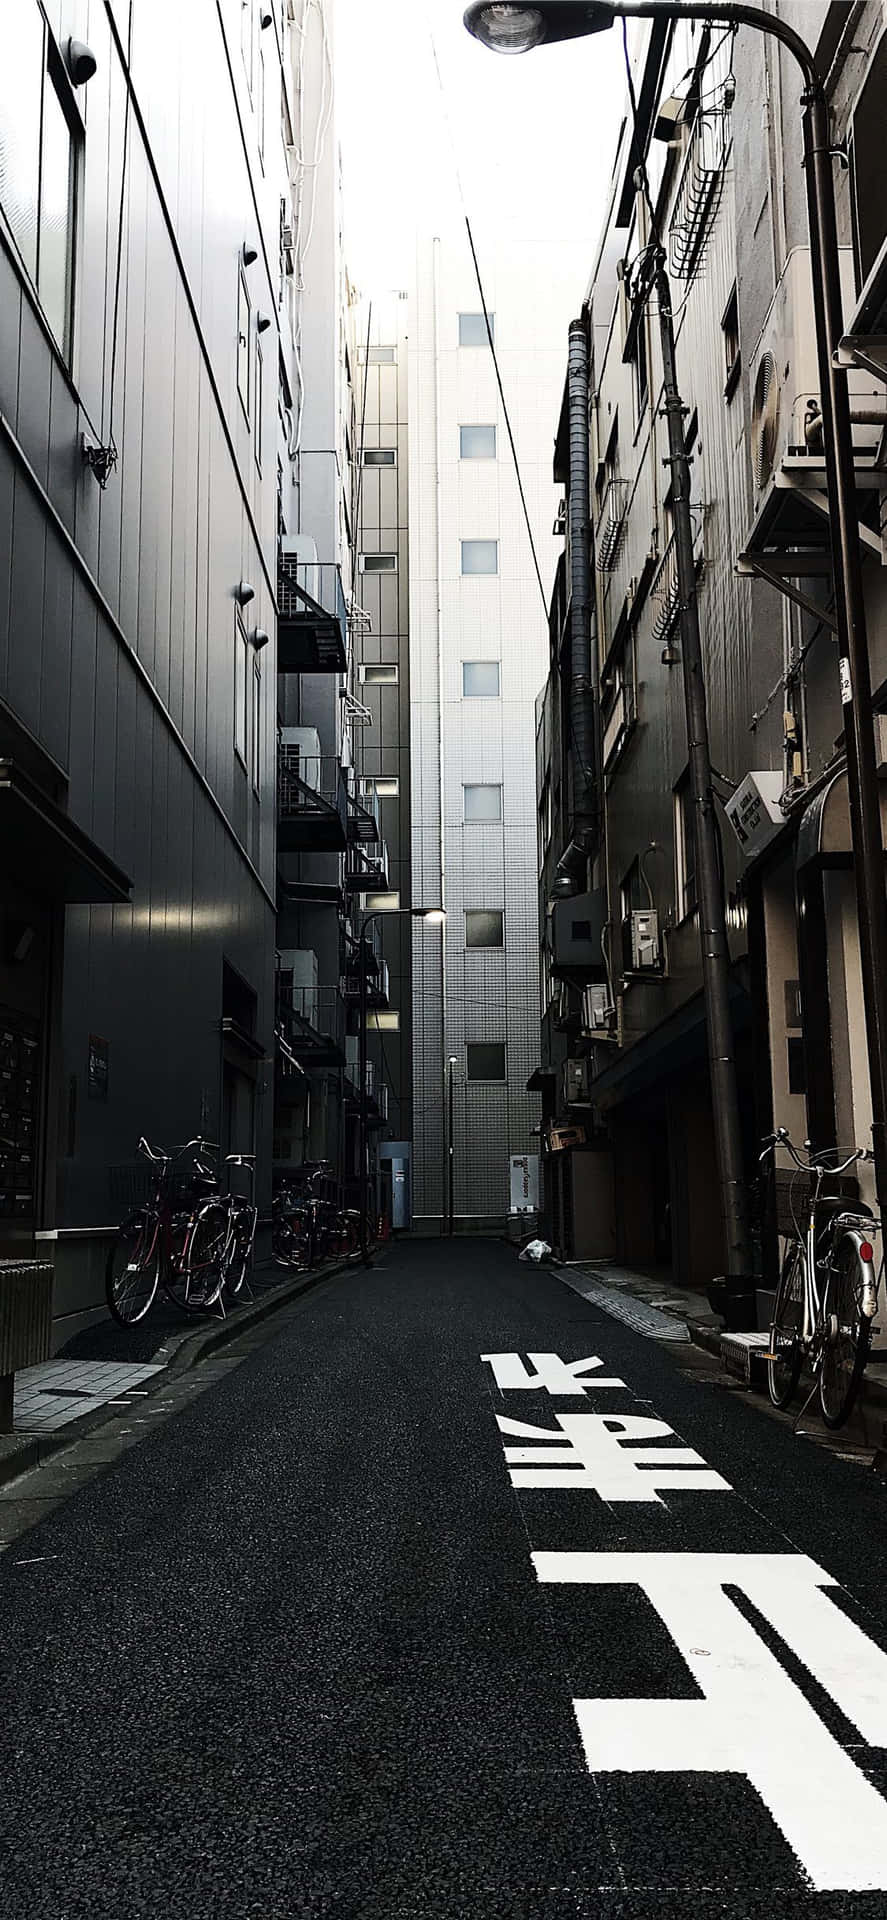 Dark Japanese Alleyway In Chiyoda Tokyo Japan Wallpaper